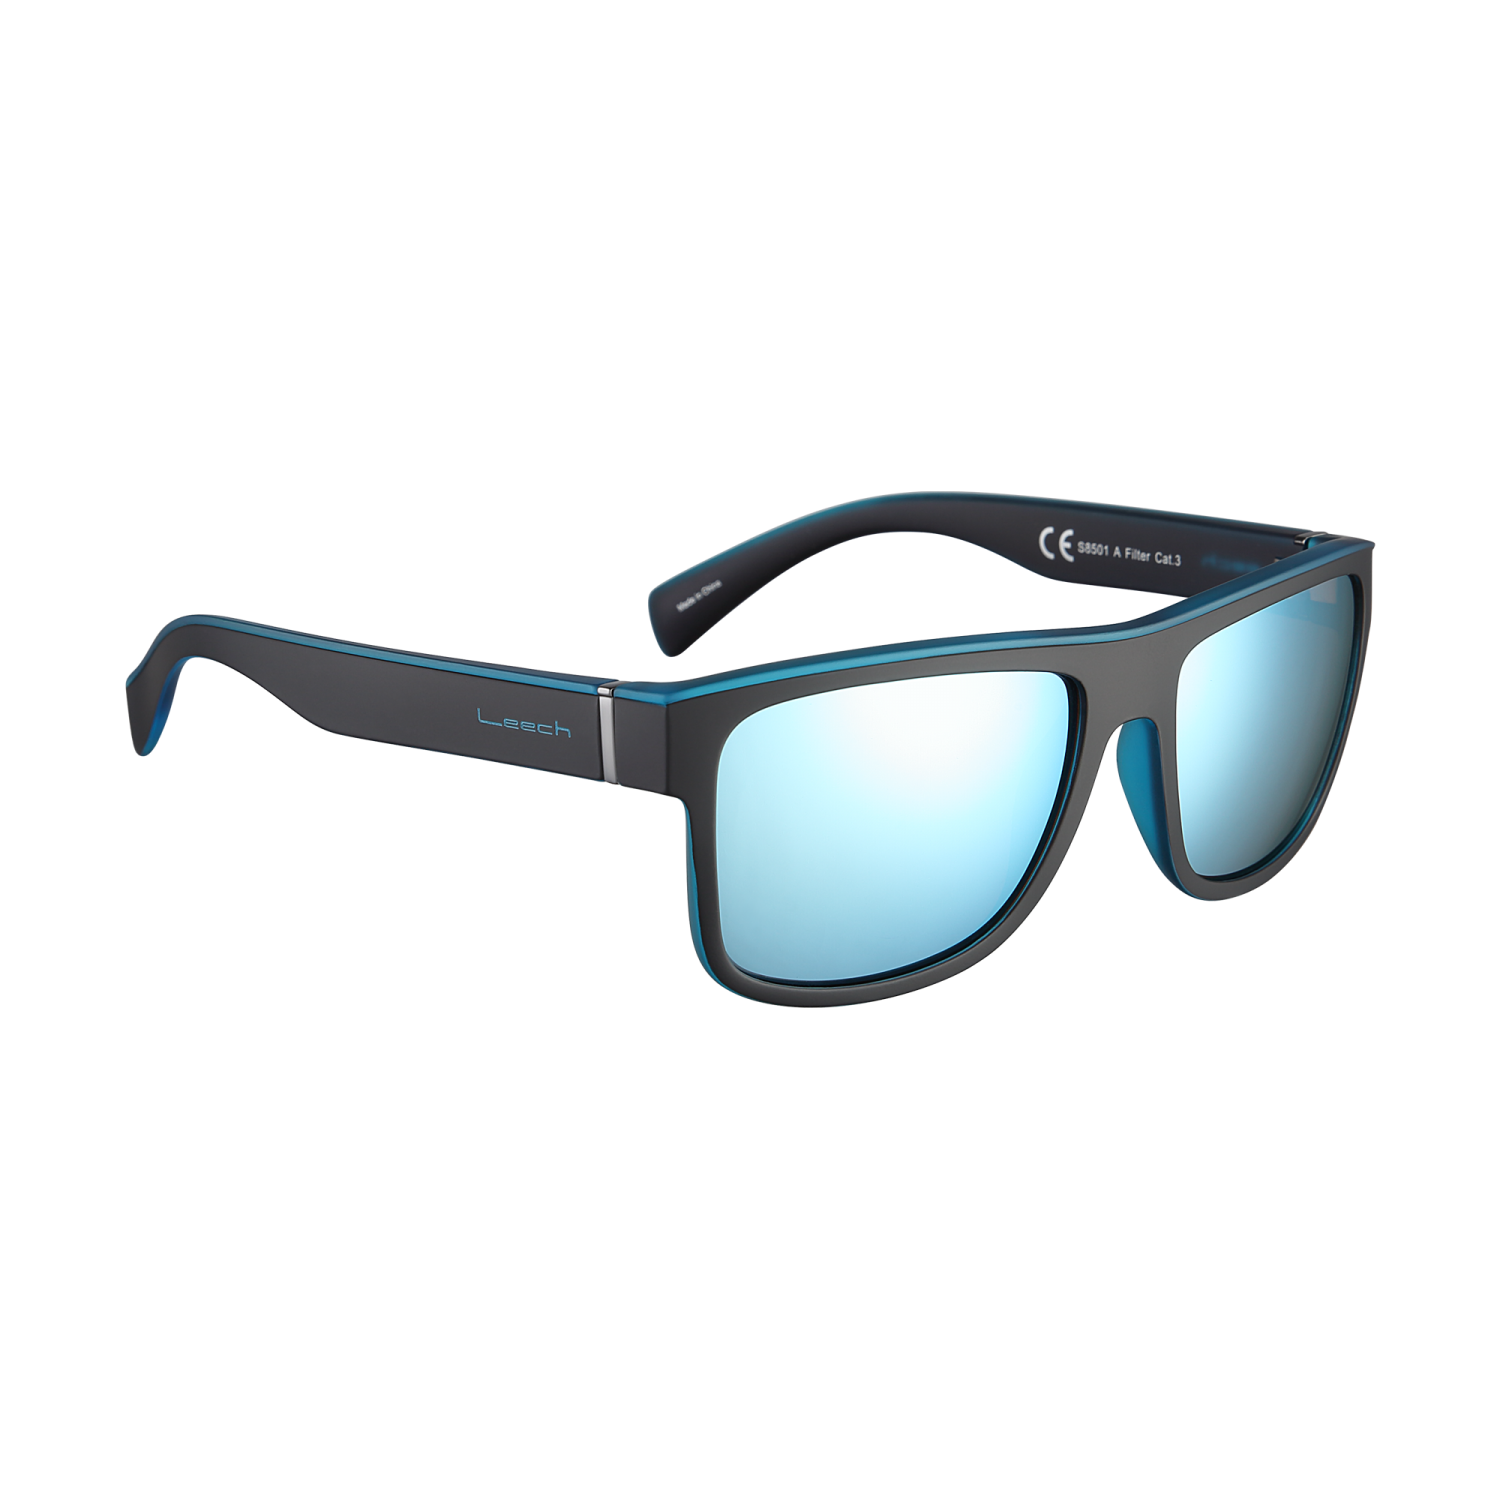 Очки солнцезащитные поляризационные Leech Eyewear Street Water - 2 рис.